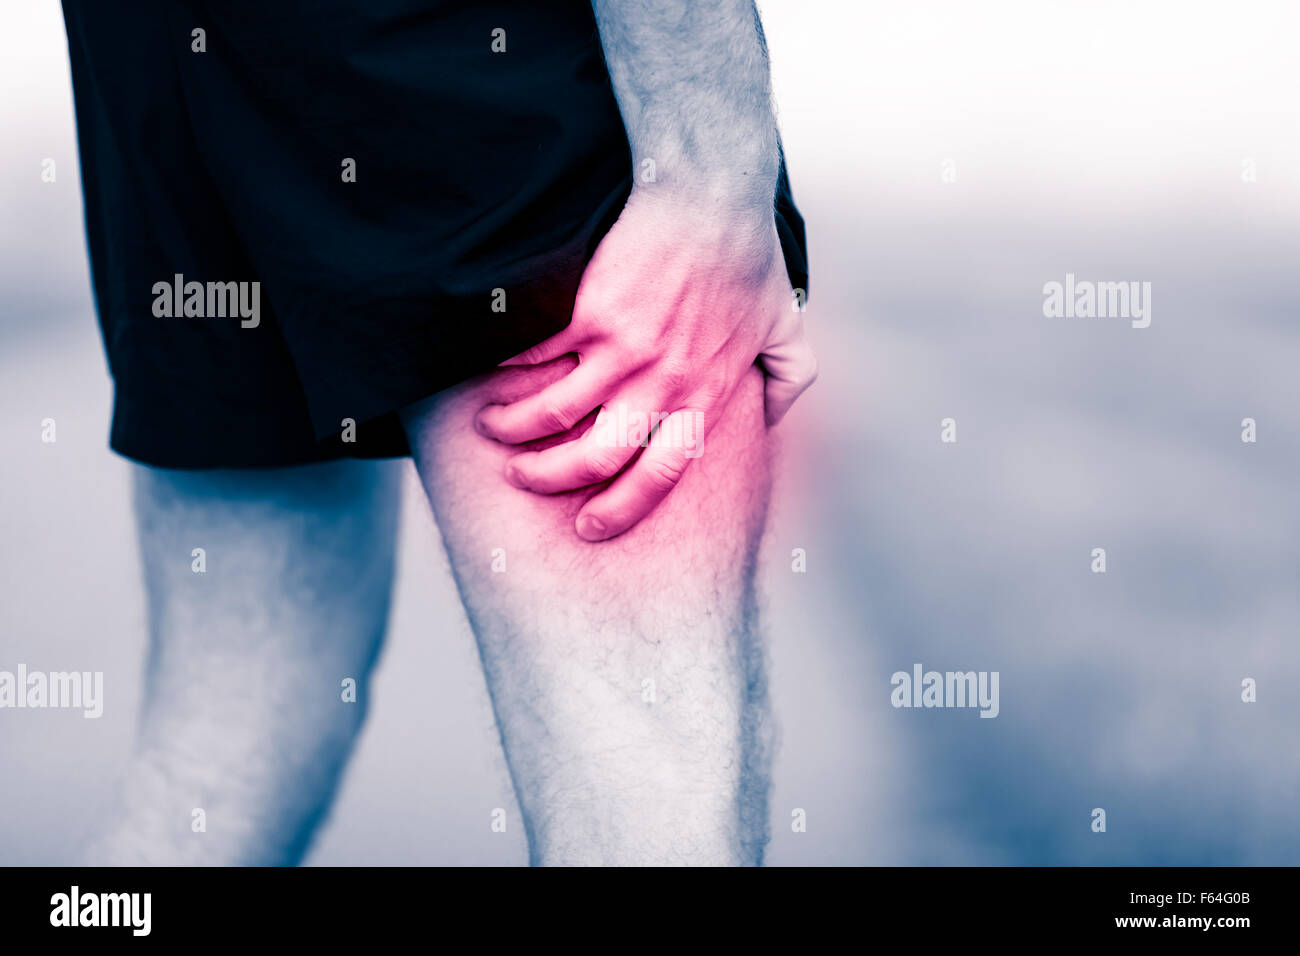 I corridori dolore alle gambe in allenamento. Uomo mal tenuta e dolorosa della muscolatura delle gambe, lo stiramento o crampi ache riempito con rosa rossa luminosa. Foto Stock